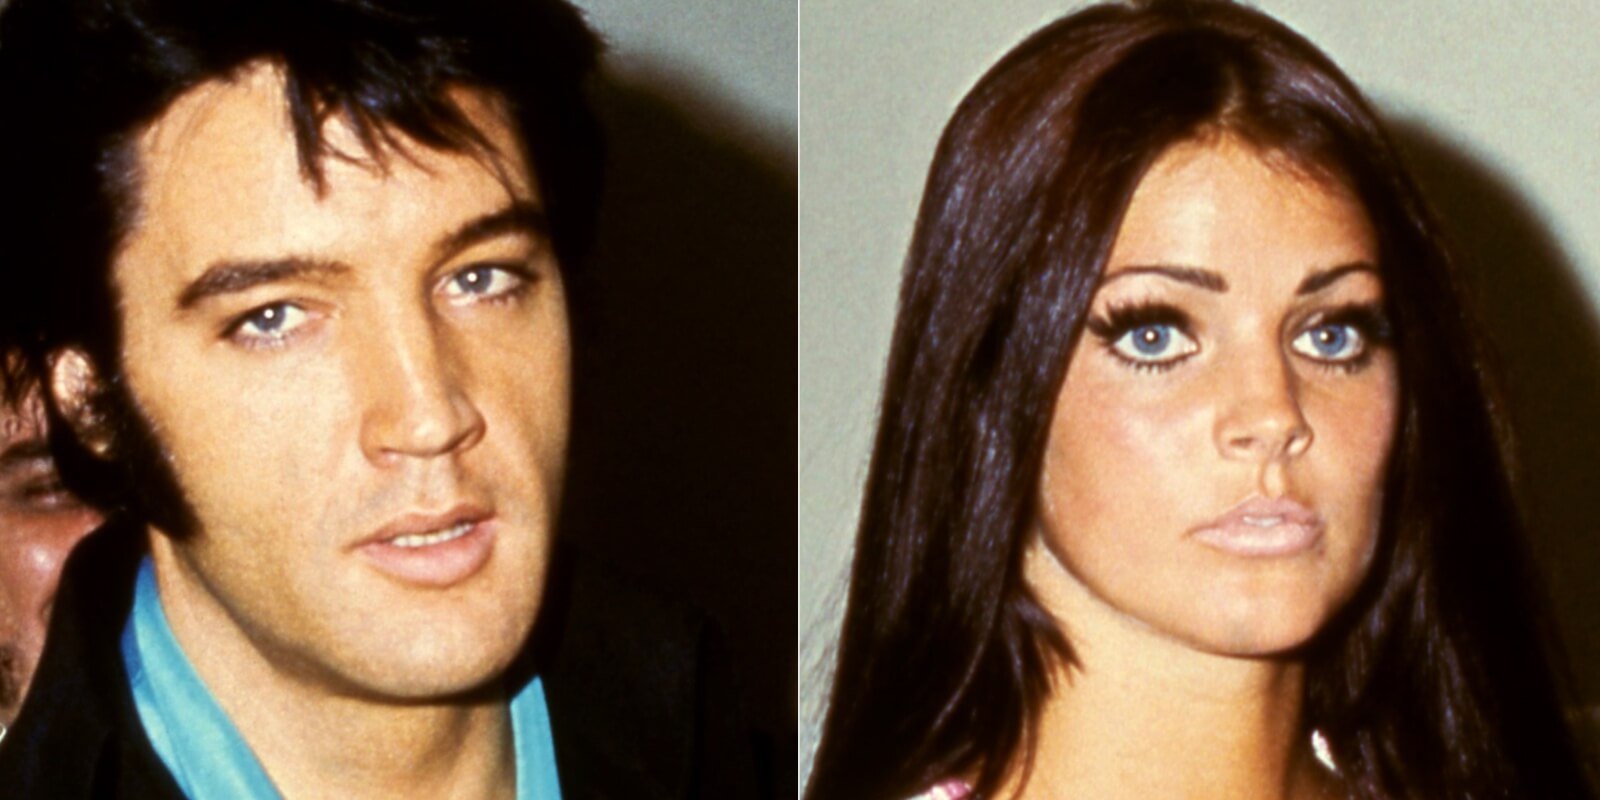 Elvis Presley and Priscilla Presley were photographed in 1970.